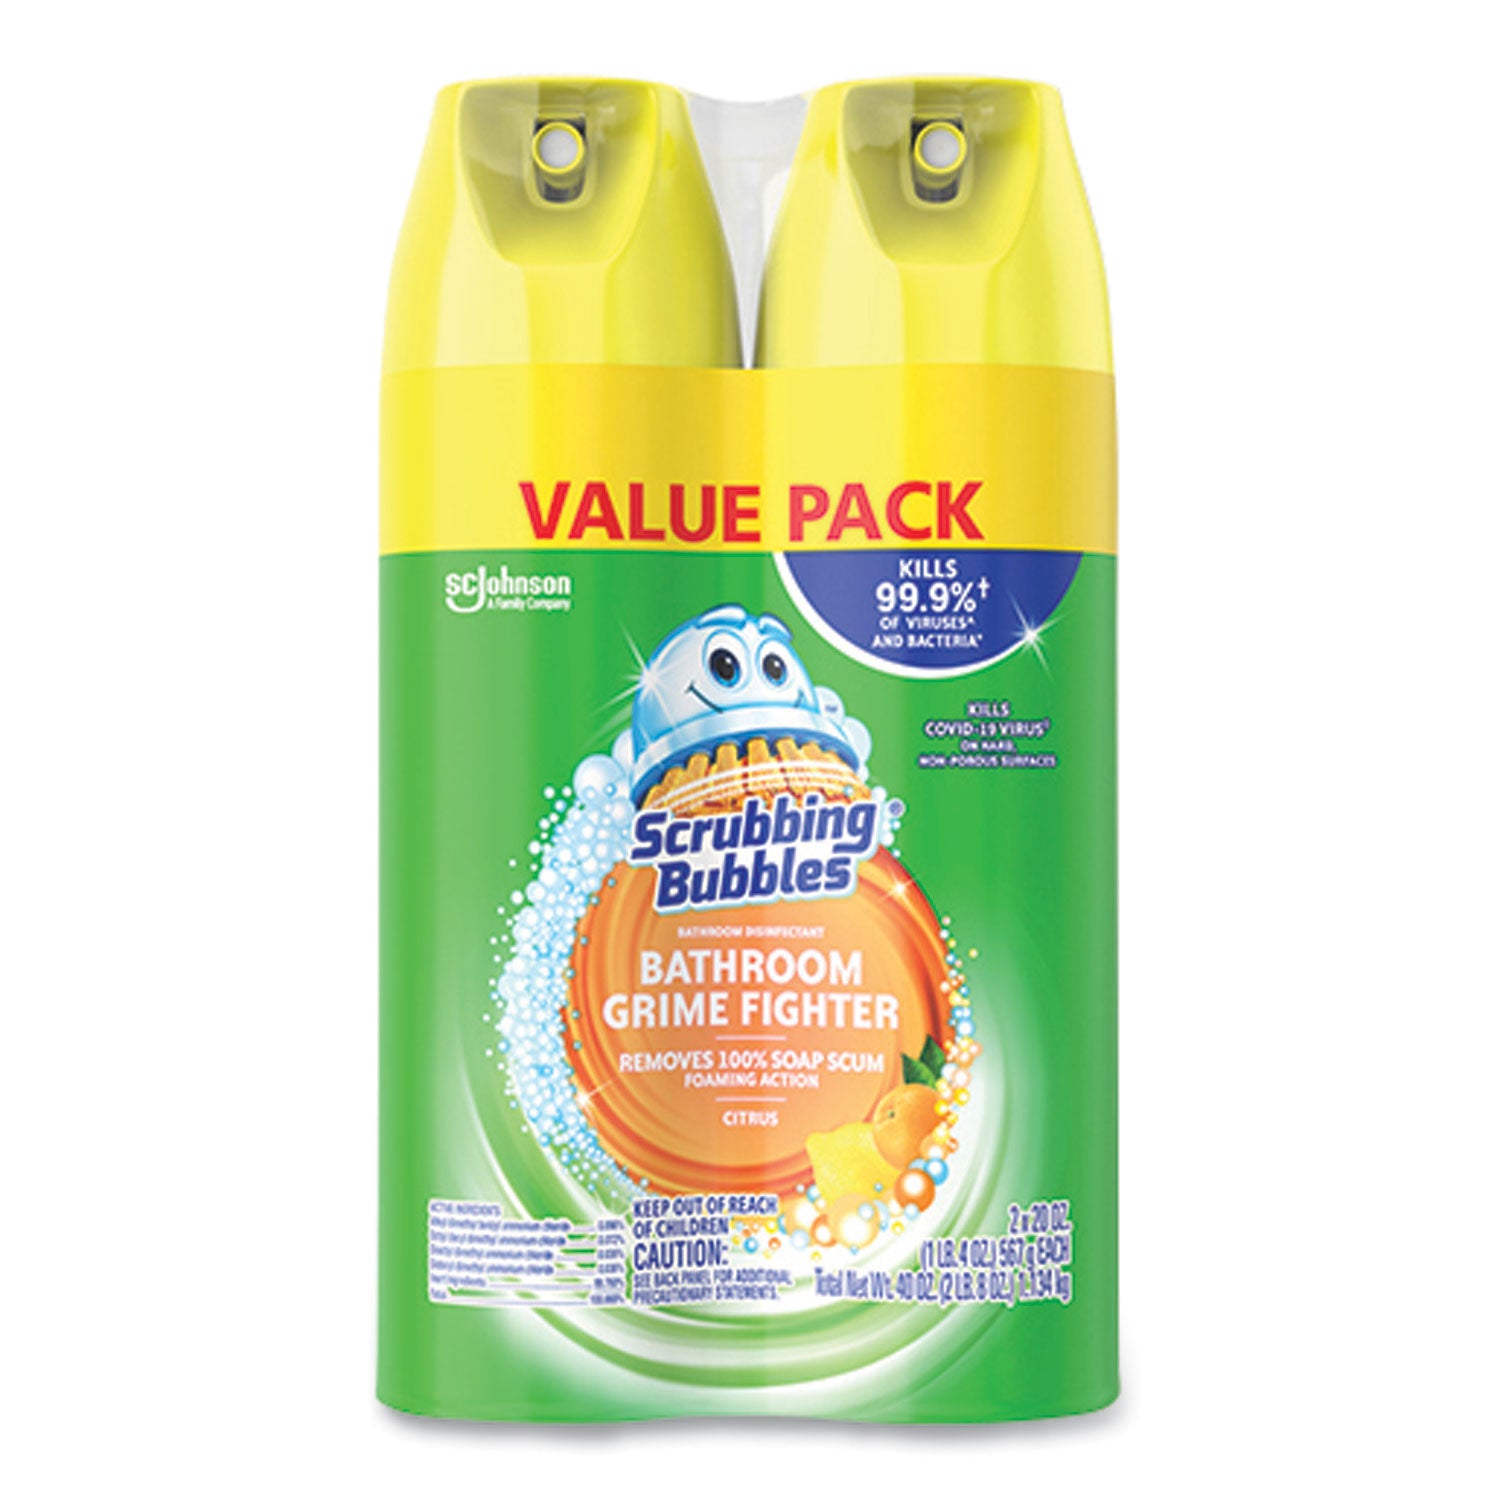 bathroom-disinfectant-grime-fighter-aerosol-citrus-scent-20-oz-aerosol-can-2-pack_sjn306381 - 1